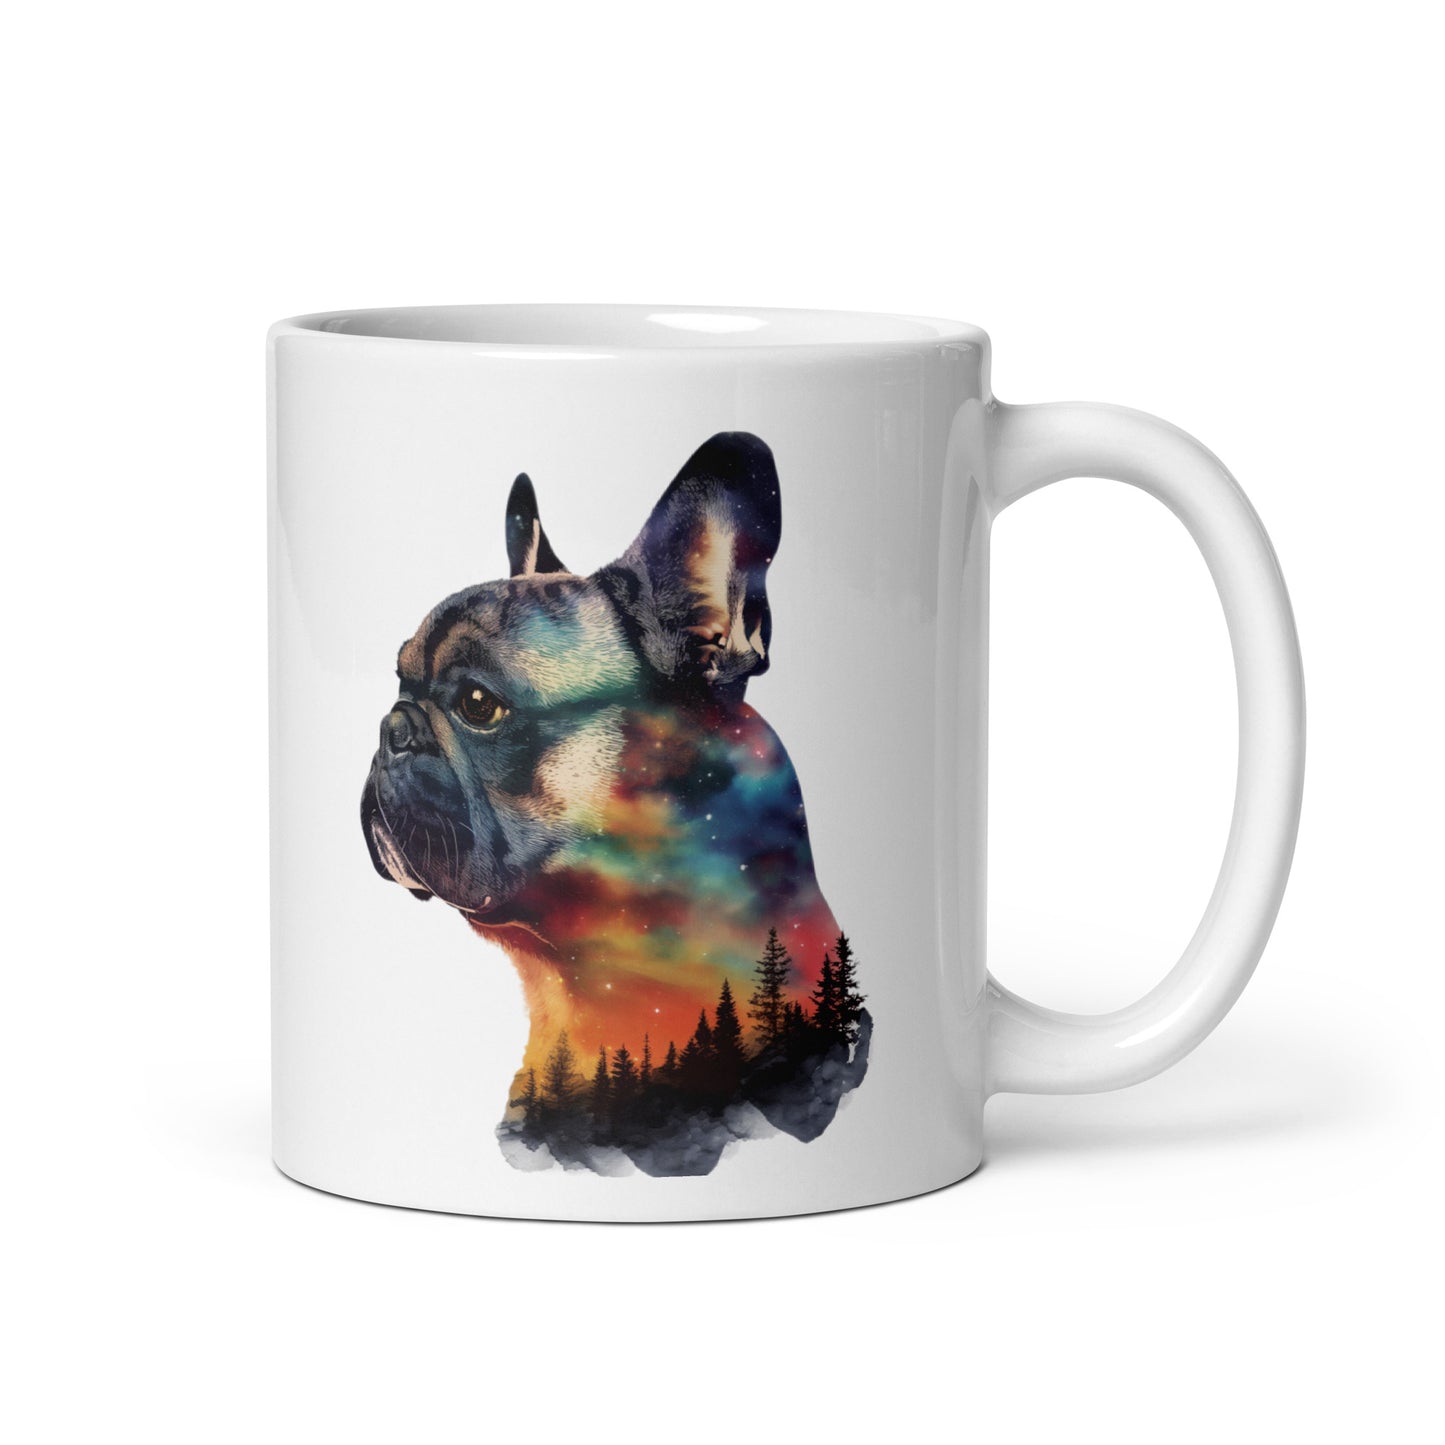 French Bulldog Double-Exposure Sunset Mug